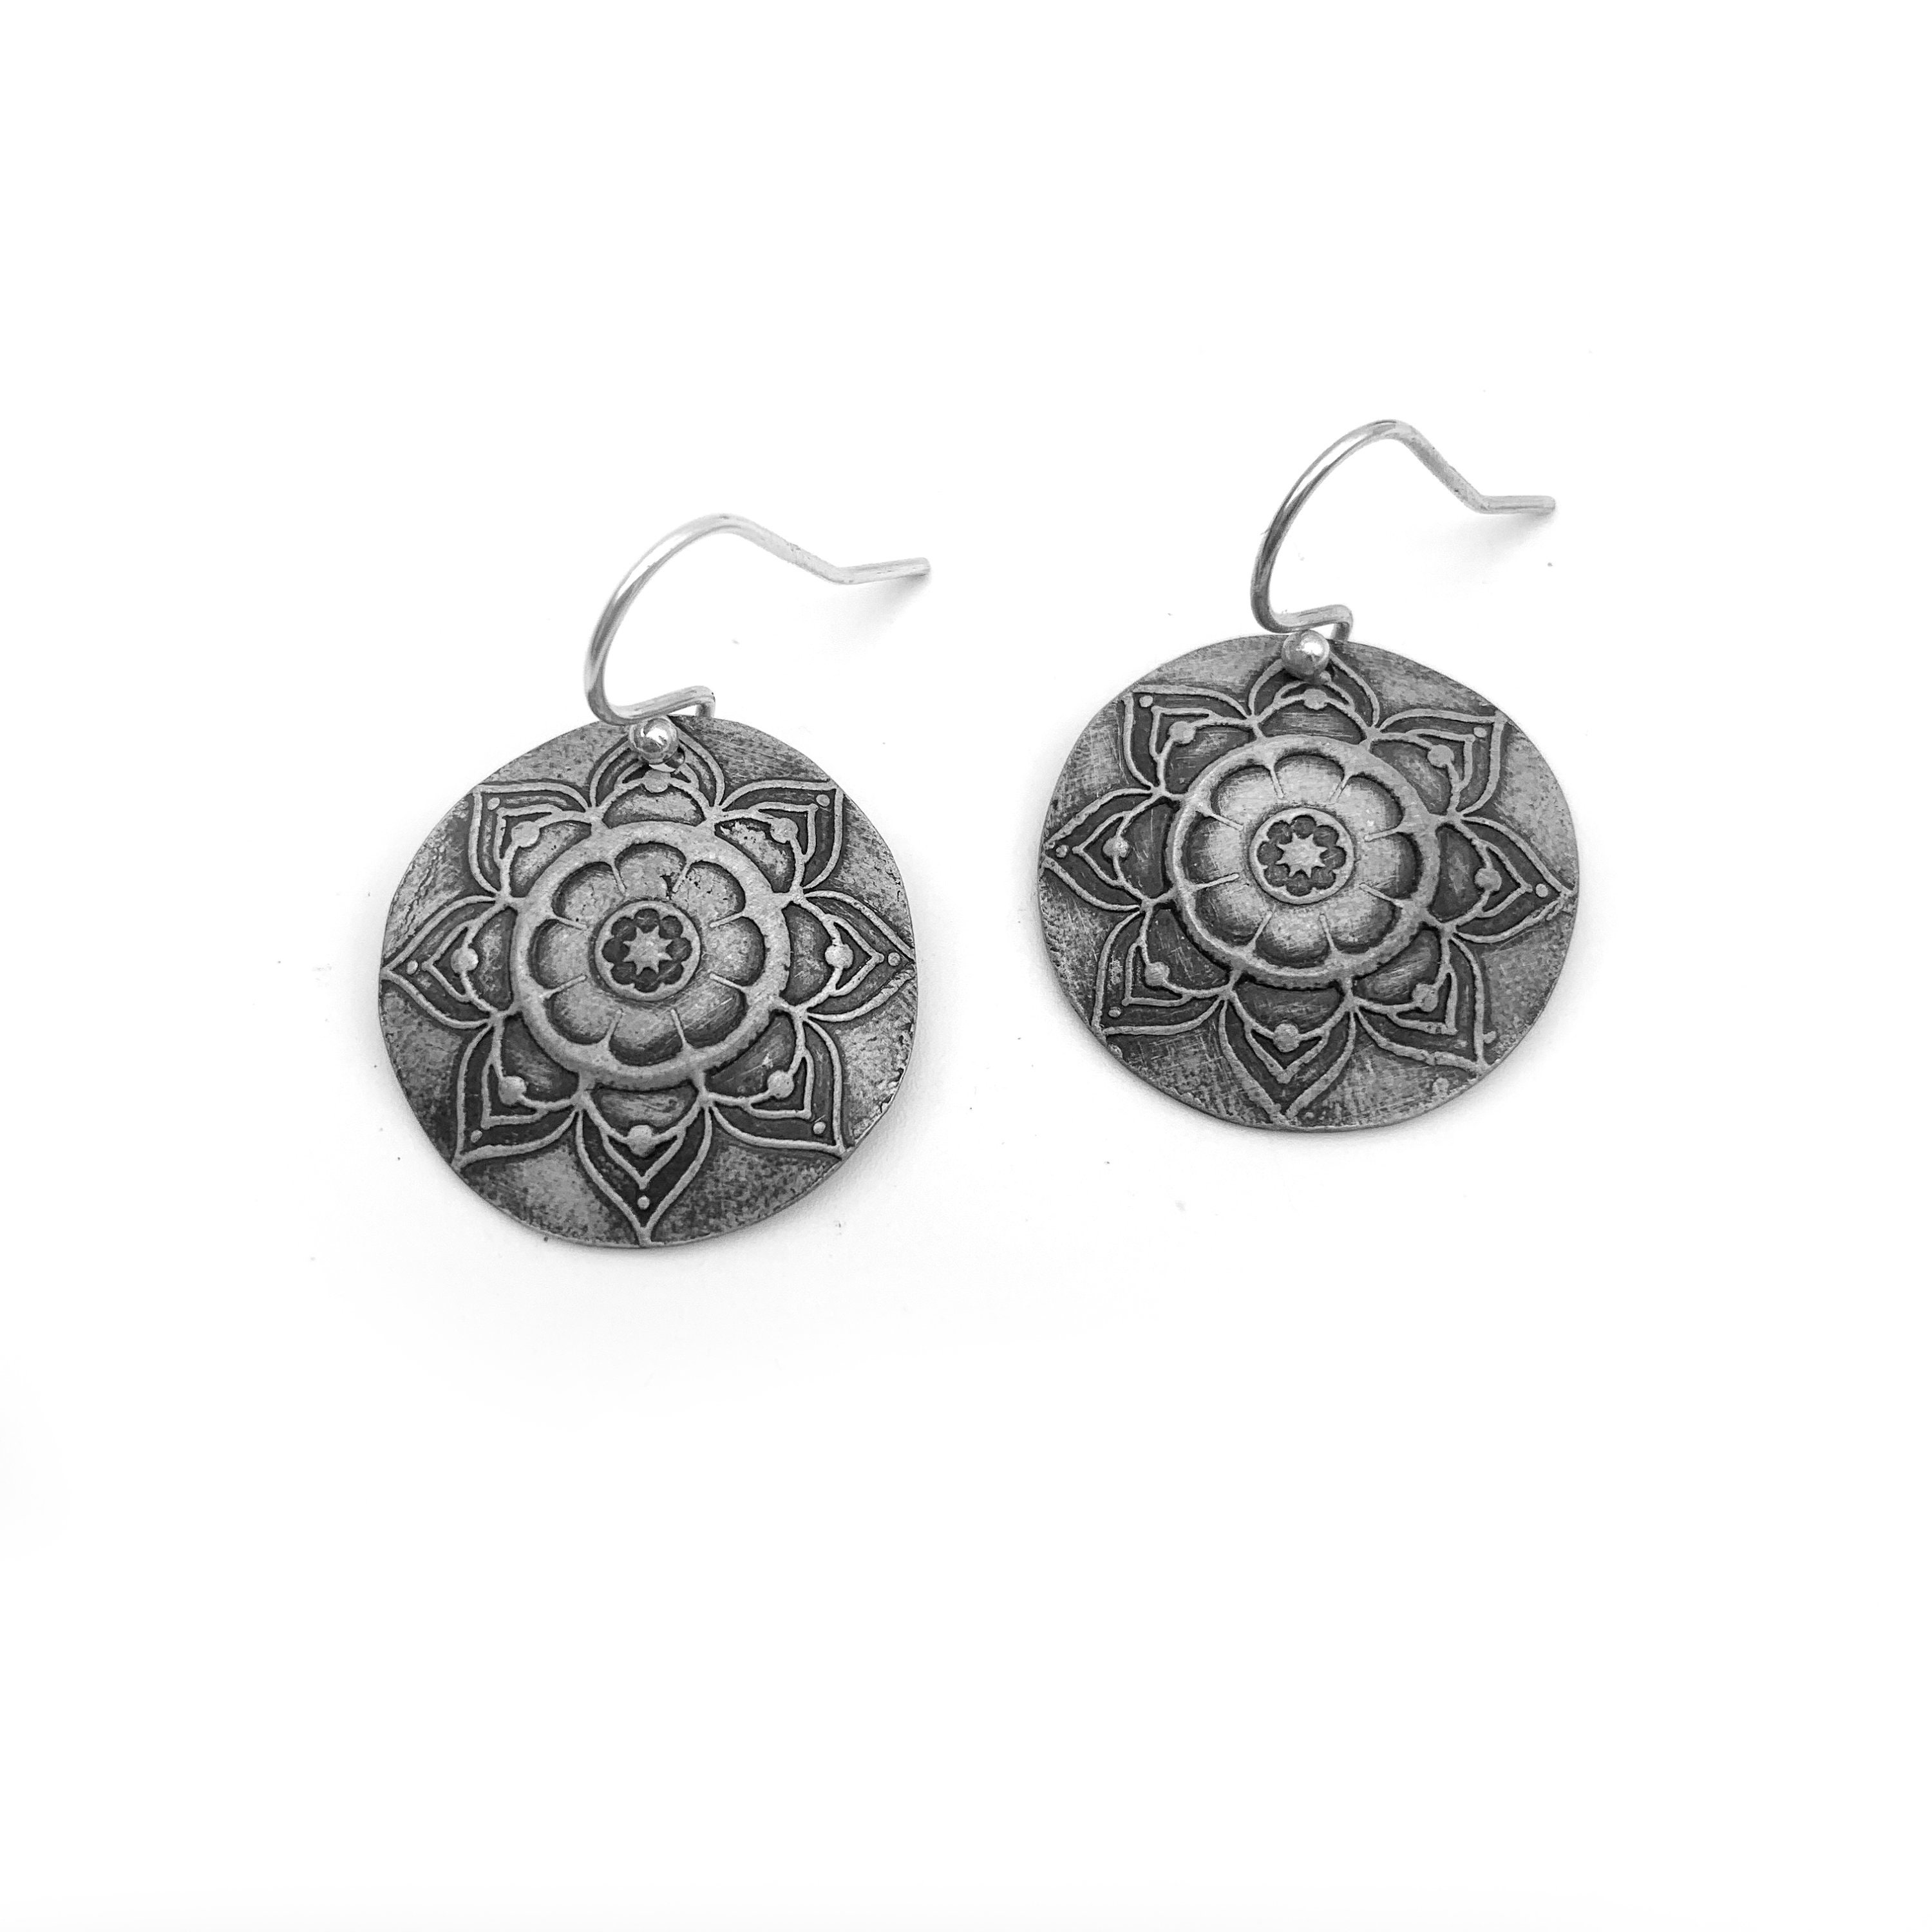 Silver Mandala Earrings Dangle Earrings With Mandala Design - Etsy